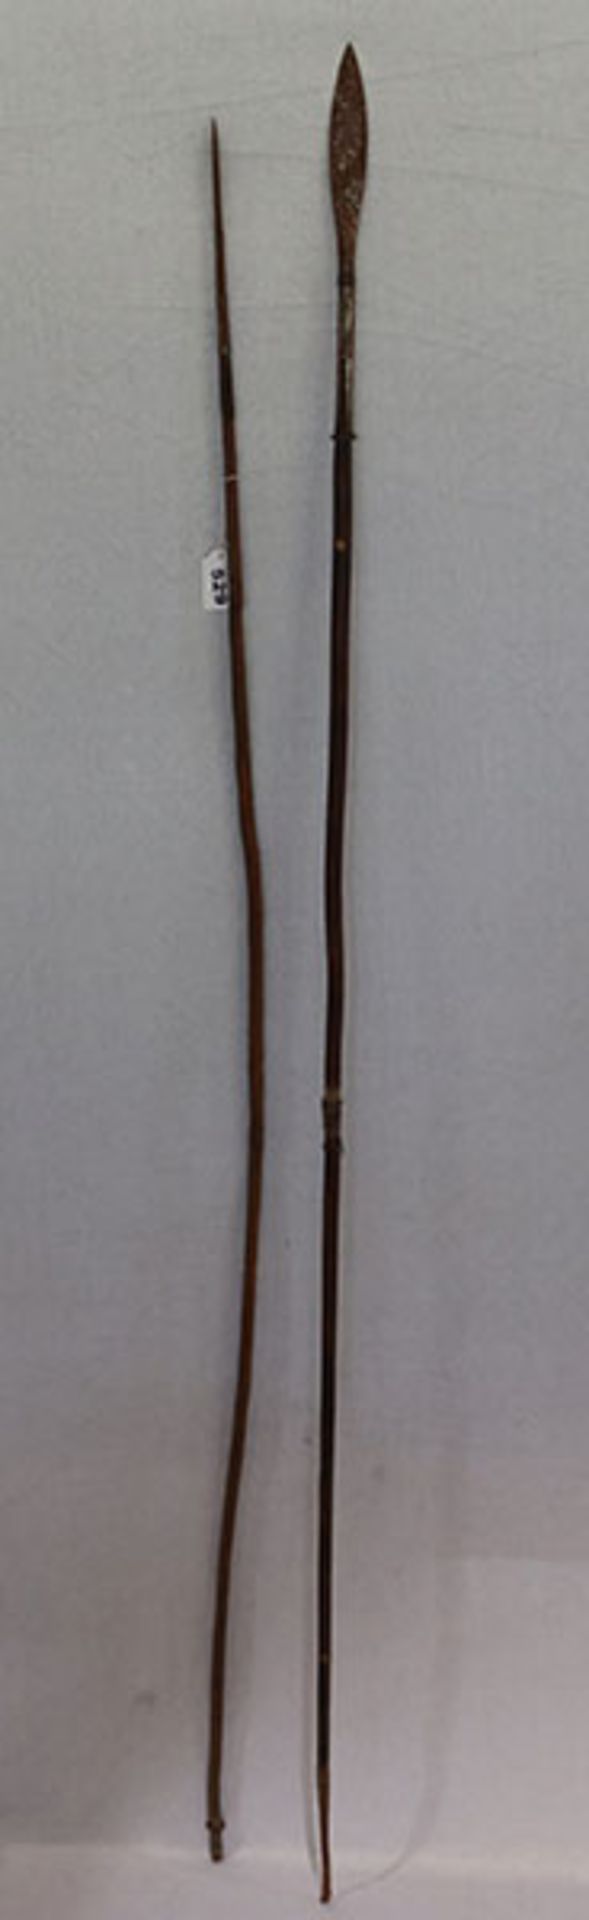 2 afrikanische Speere, L 165/170 cm, Altersspuren